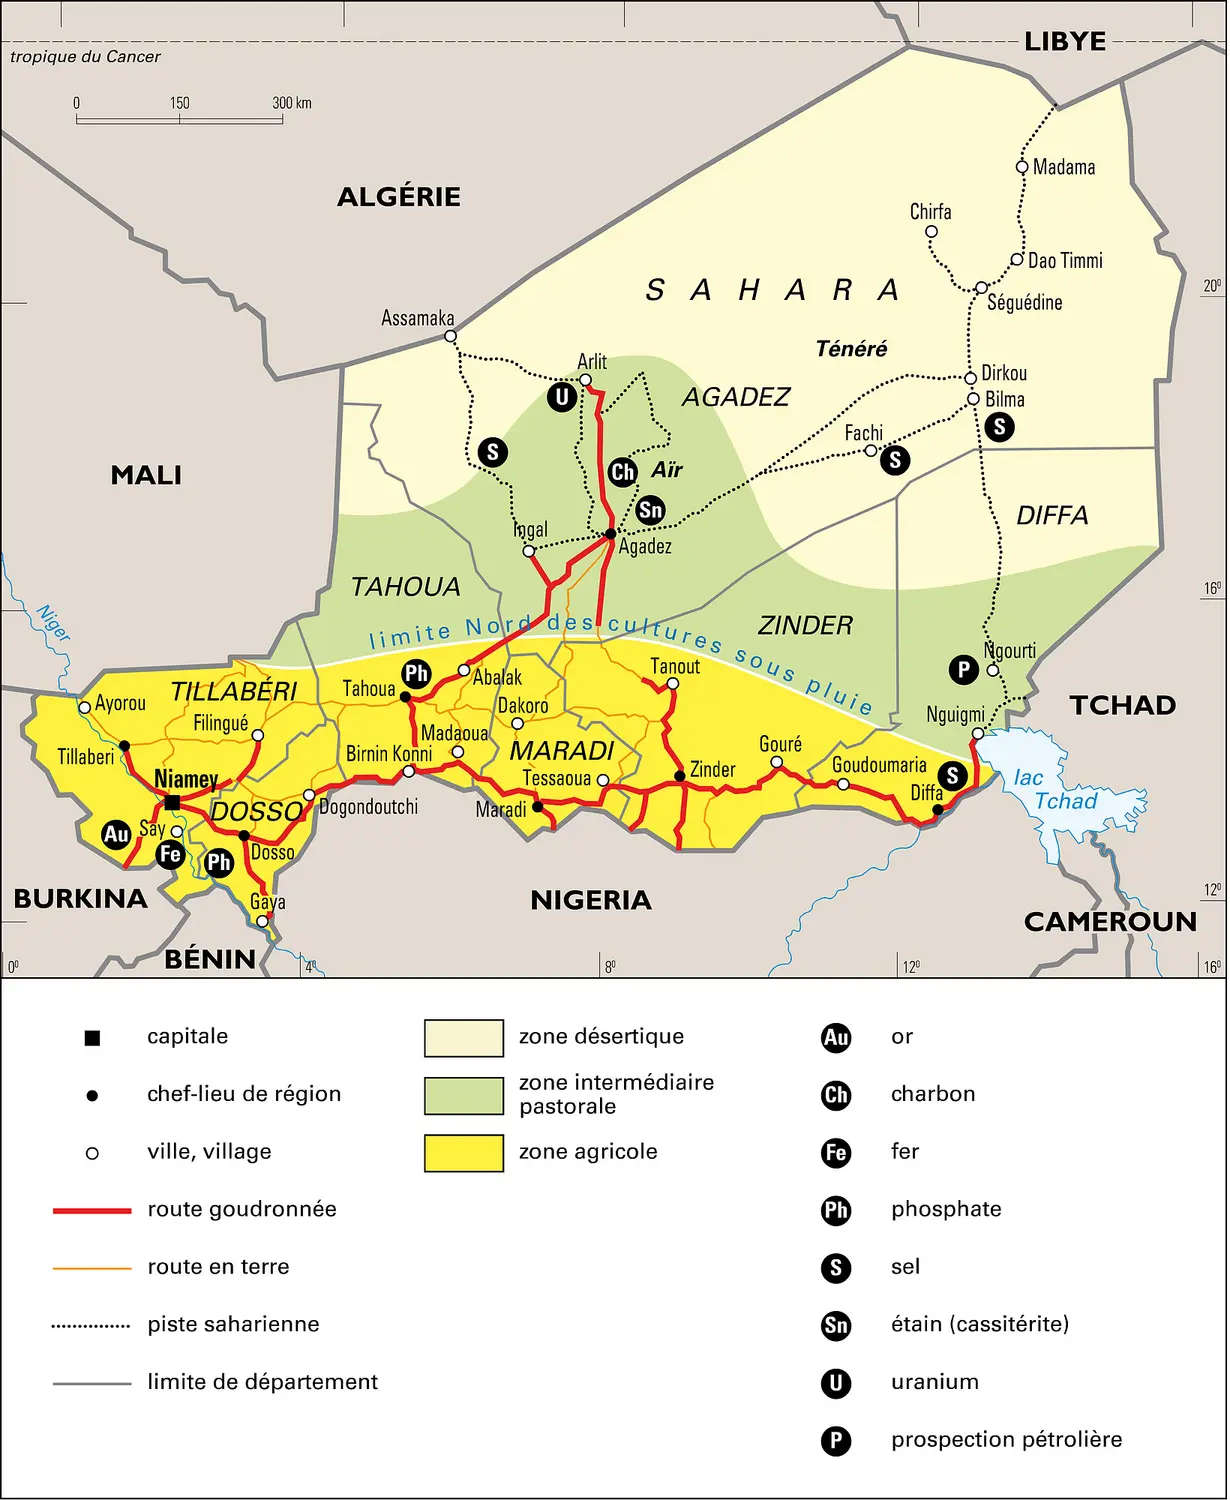 Niger : territoire et mines